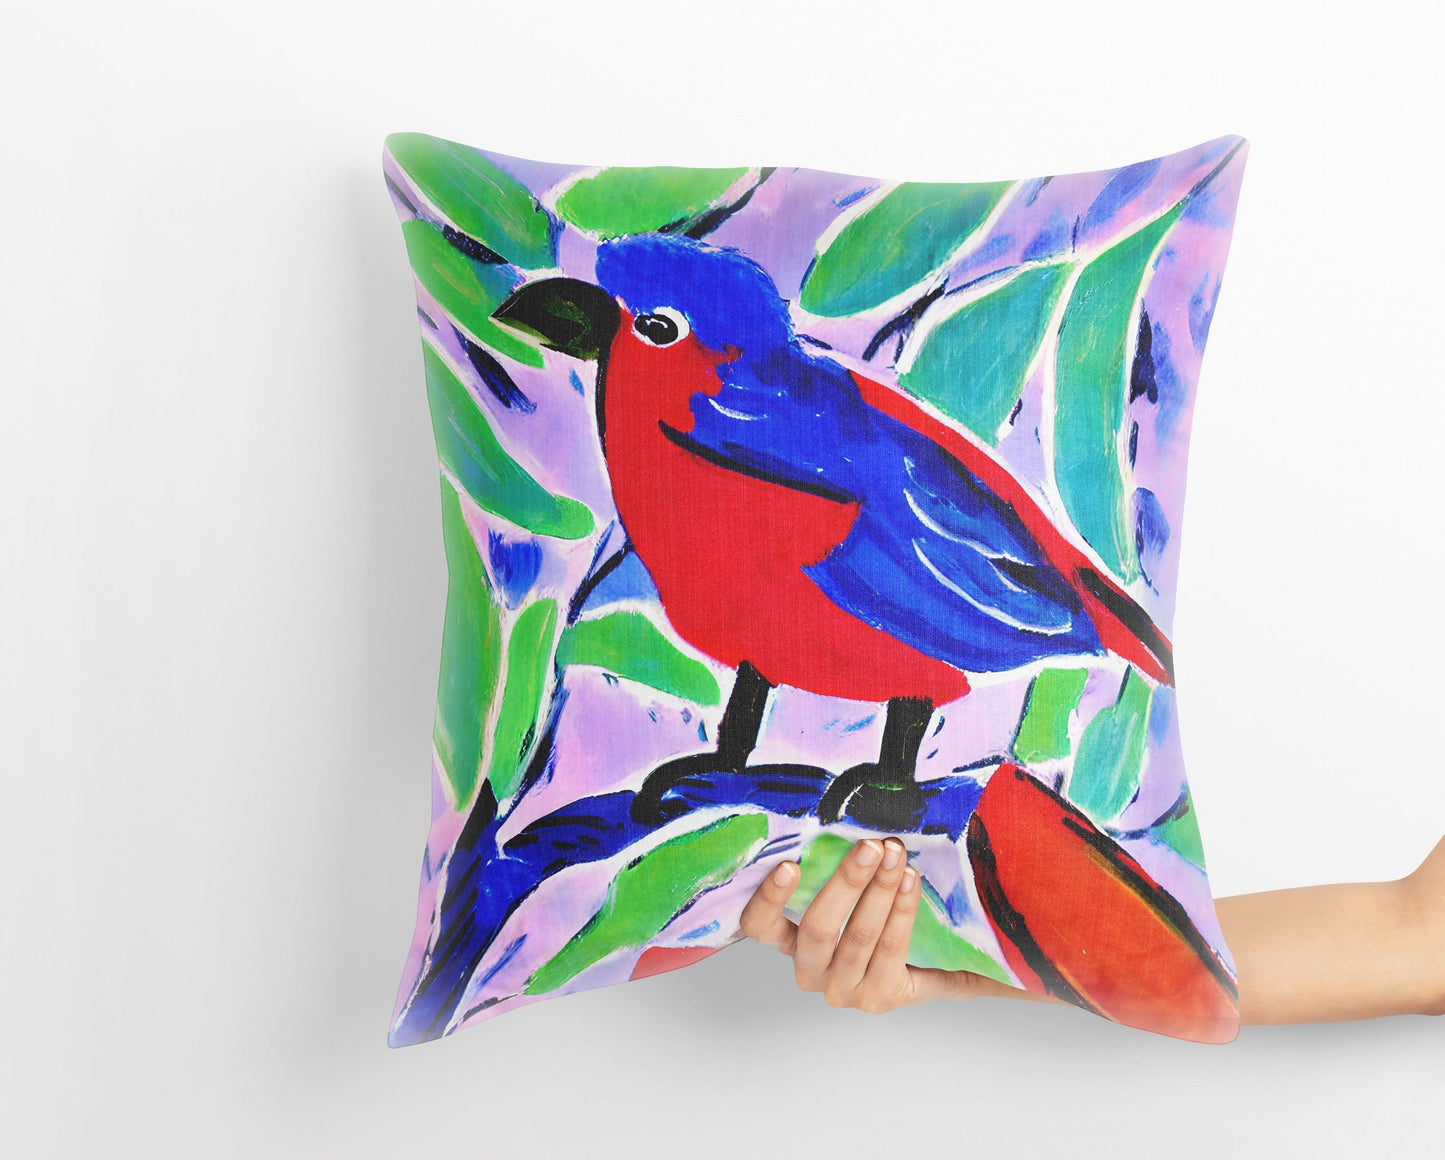 Red And Blue Bird Throw Pillow, Abstract Throw Pillow, Art Pillow, Colorful Pillow Case, Modern Pillow, 20X20 Pillow Cover, Housewarming